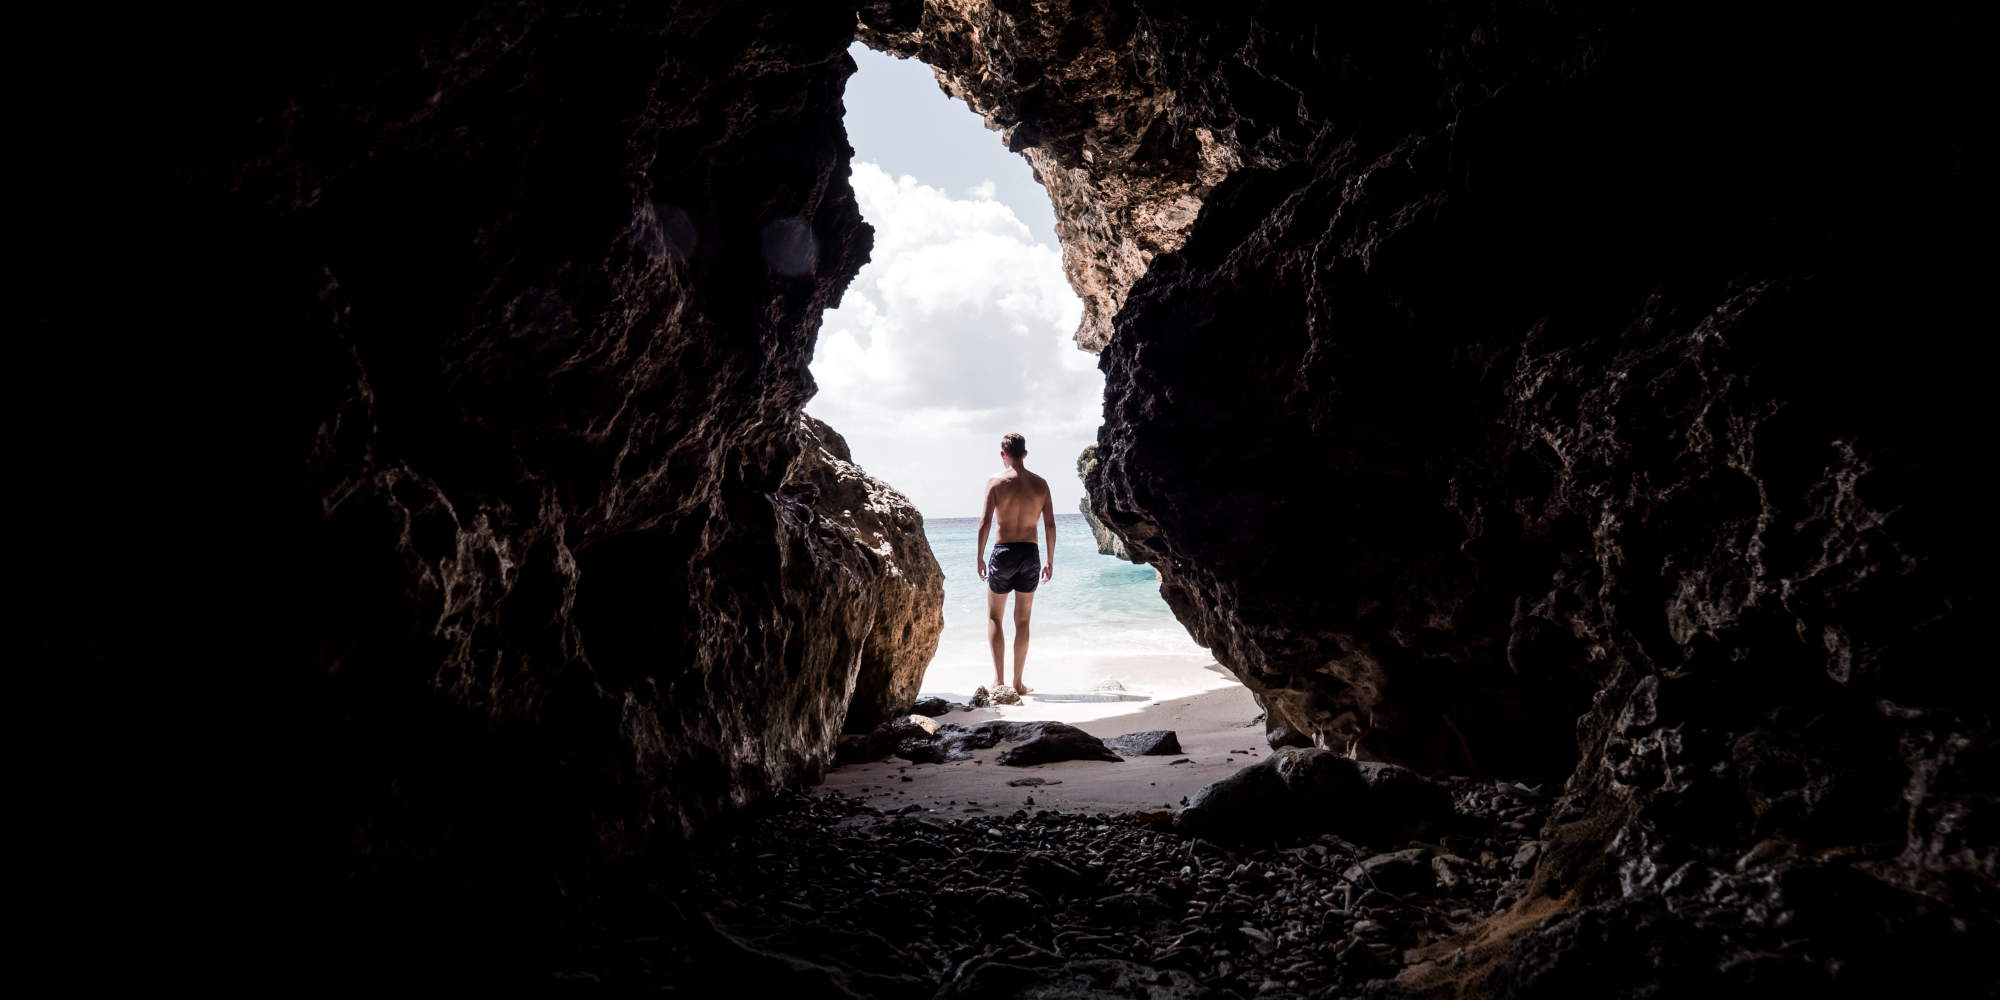 Άνδρας περνά μέσα από μια σπηλιά και βγαίνει σε ειδυλλιακή παραλία